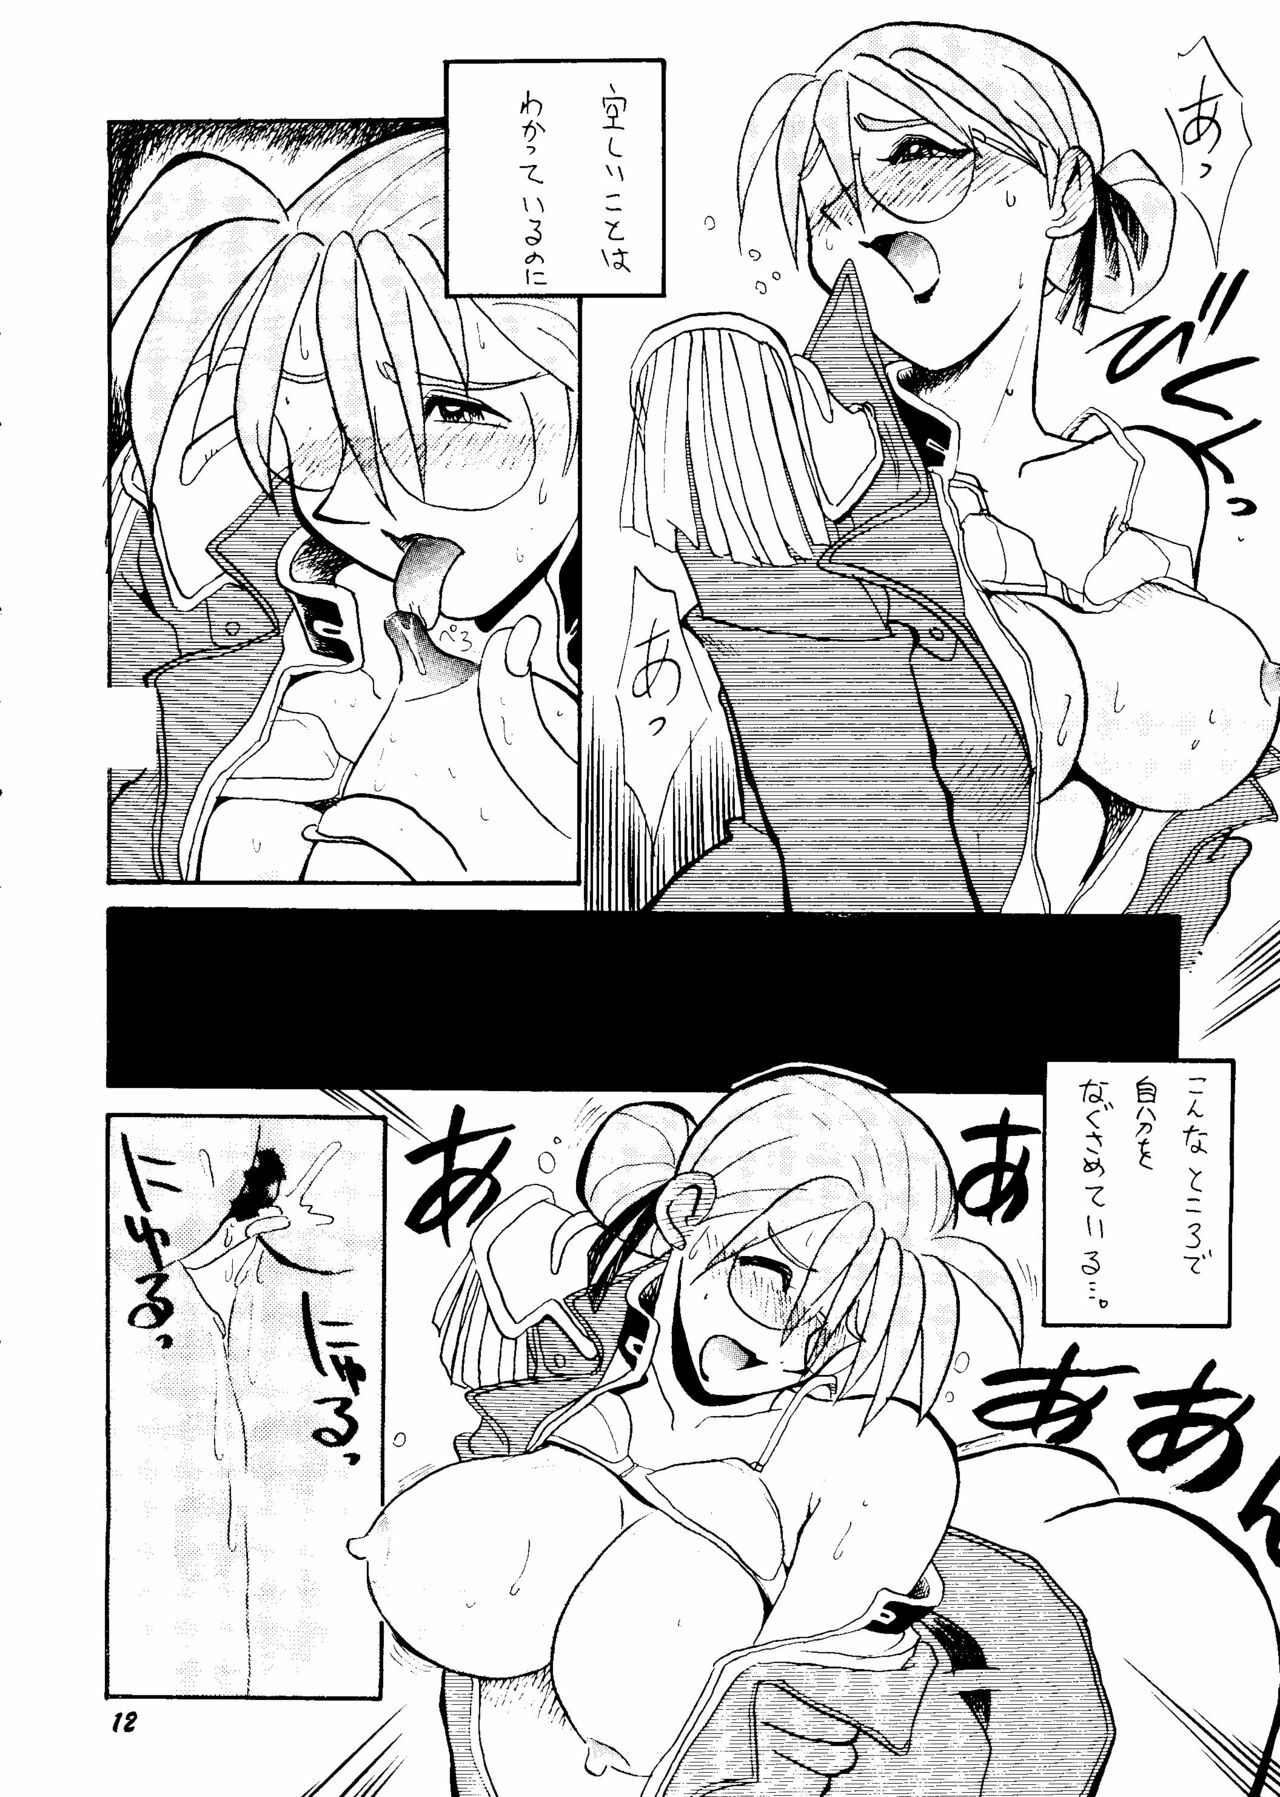 [Rupinasu Touzokudan & Cha Cha Cha Brothers] Shinu no wa Yatsura da (Gundam Wing) page 11 full